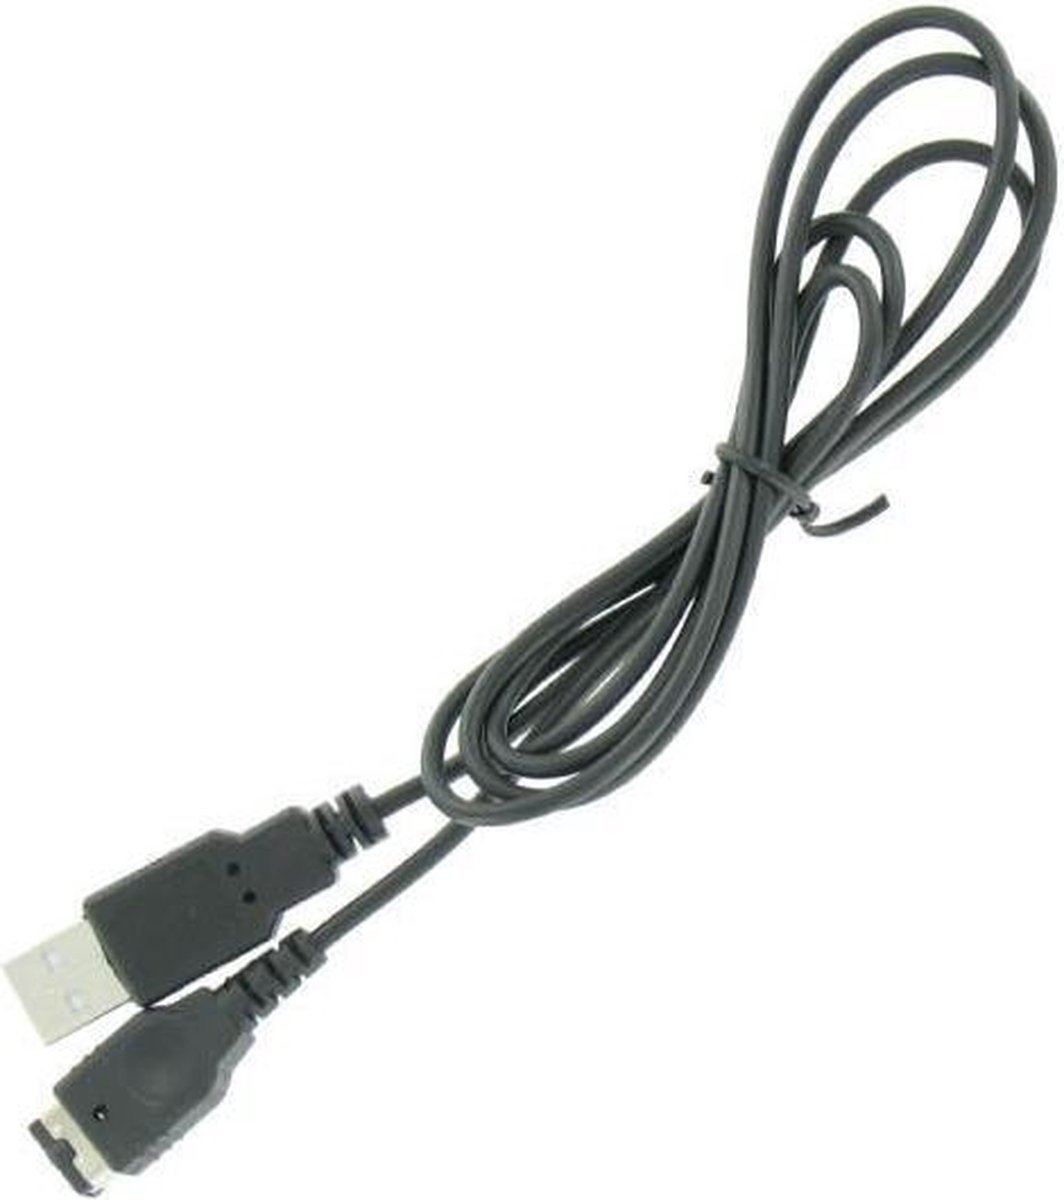 Game console USB laadkabel voor Nintendo DS en Game Boy Advance SP - 1 meter - Dolphix